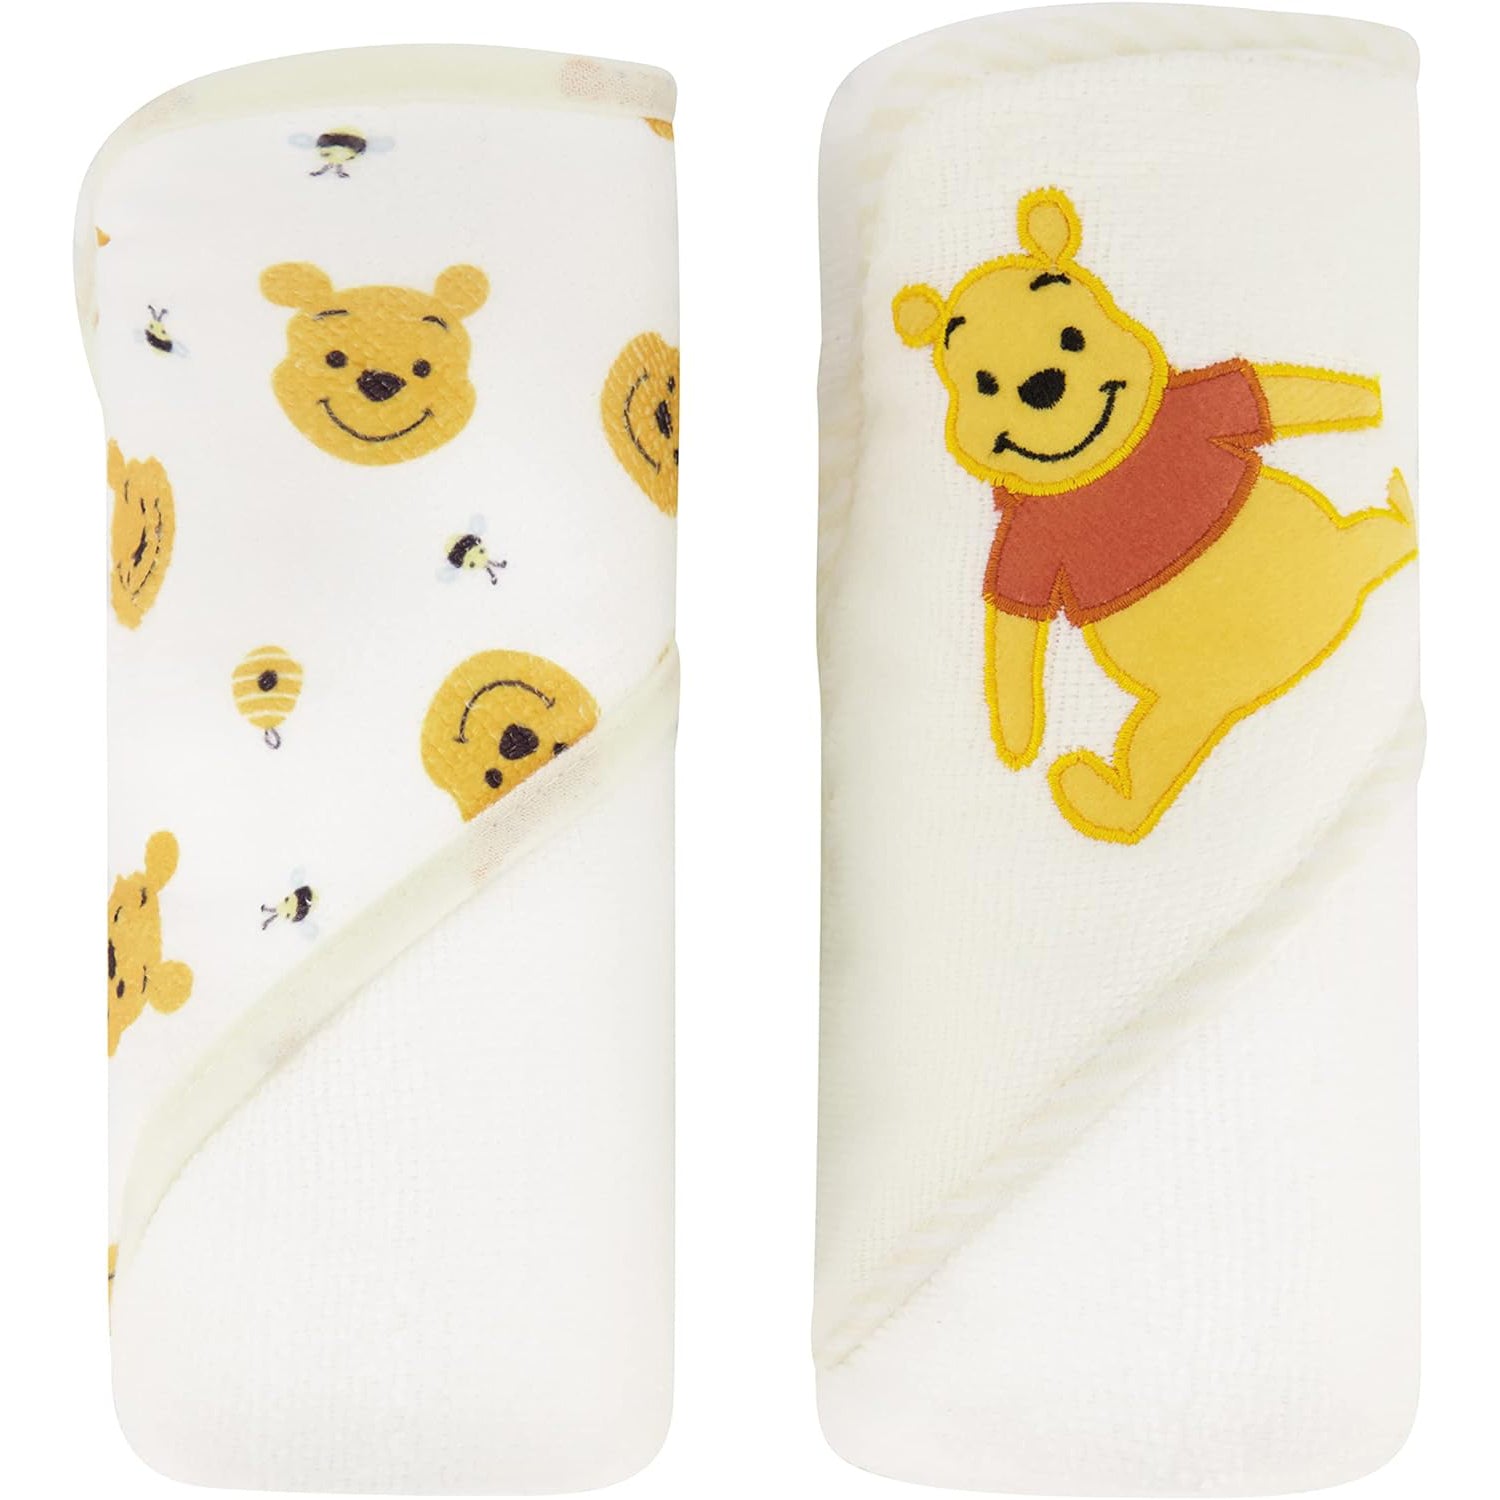 Winnie the Pooh Hooded Baby Towel 2 Pack